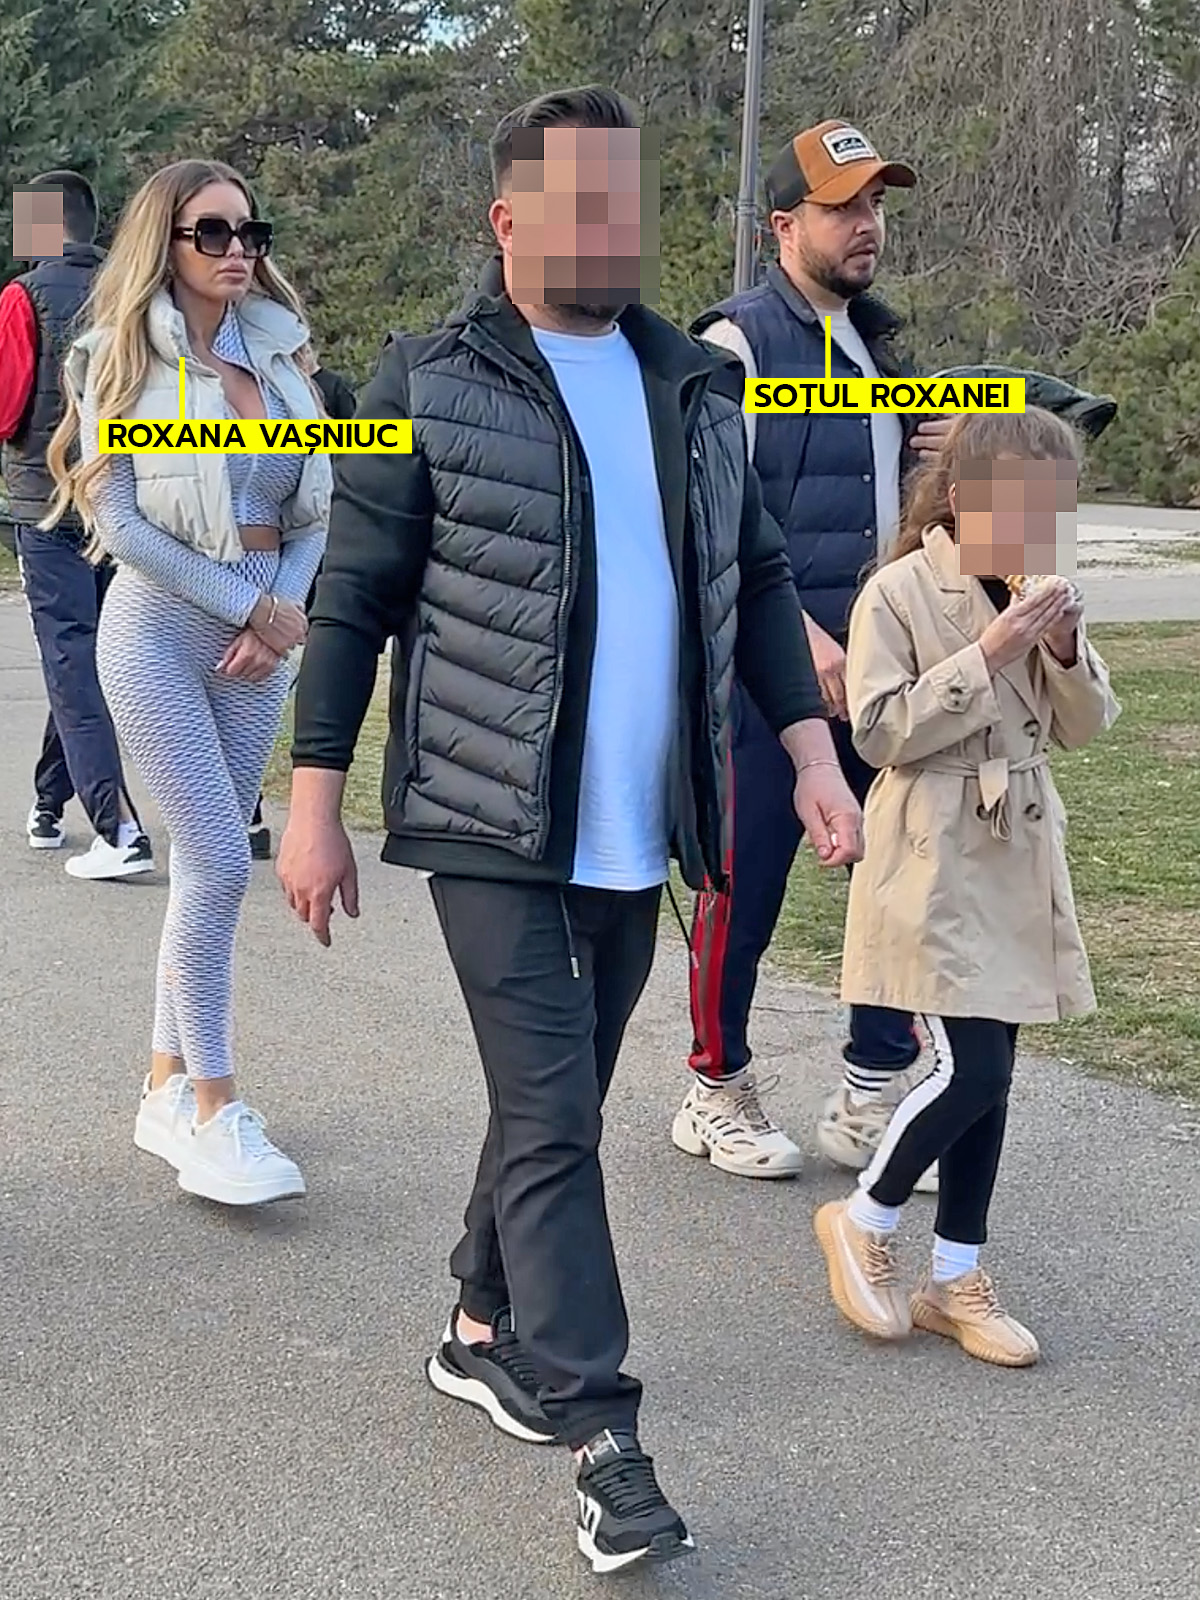 Roxana Vașniuc, alături de soțul ei, fetița și niște prieteni la o plimbare